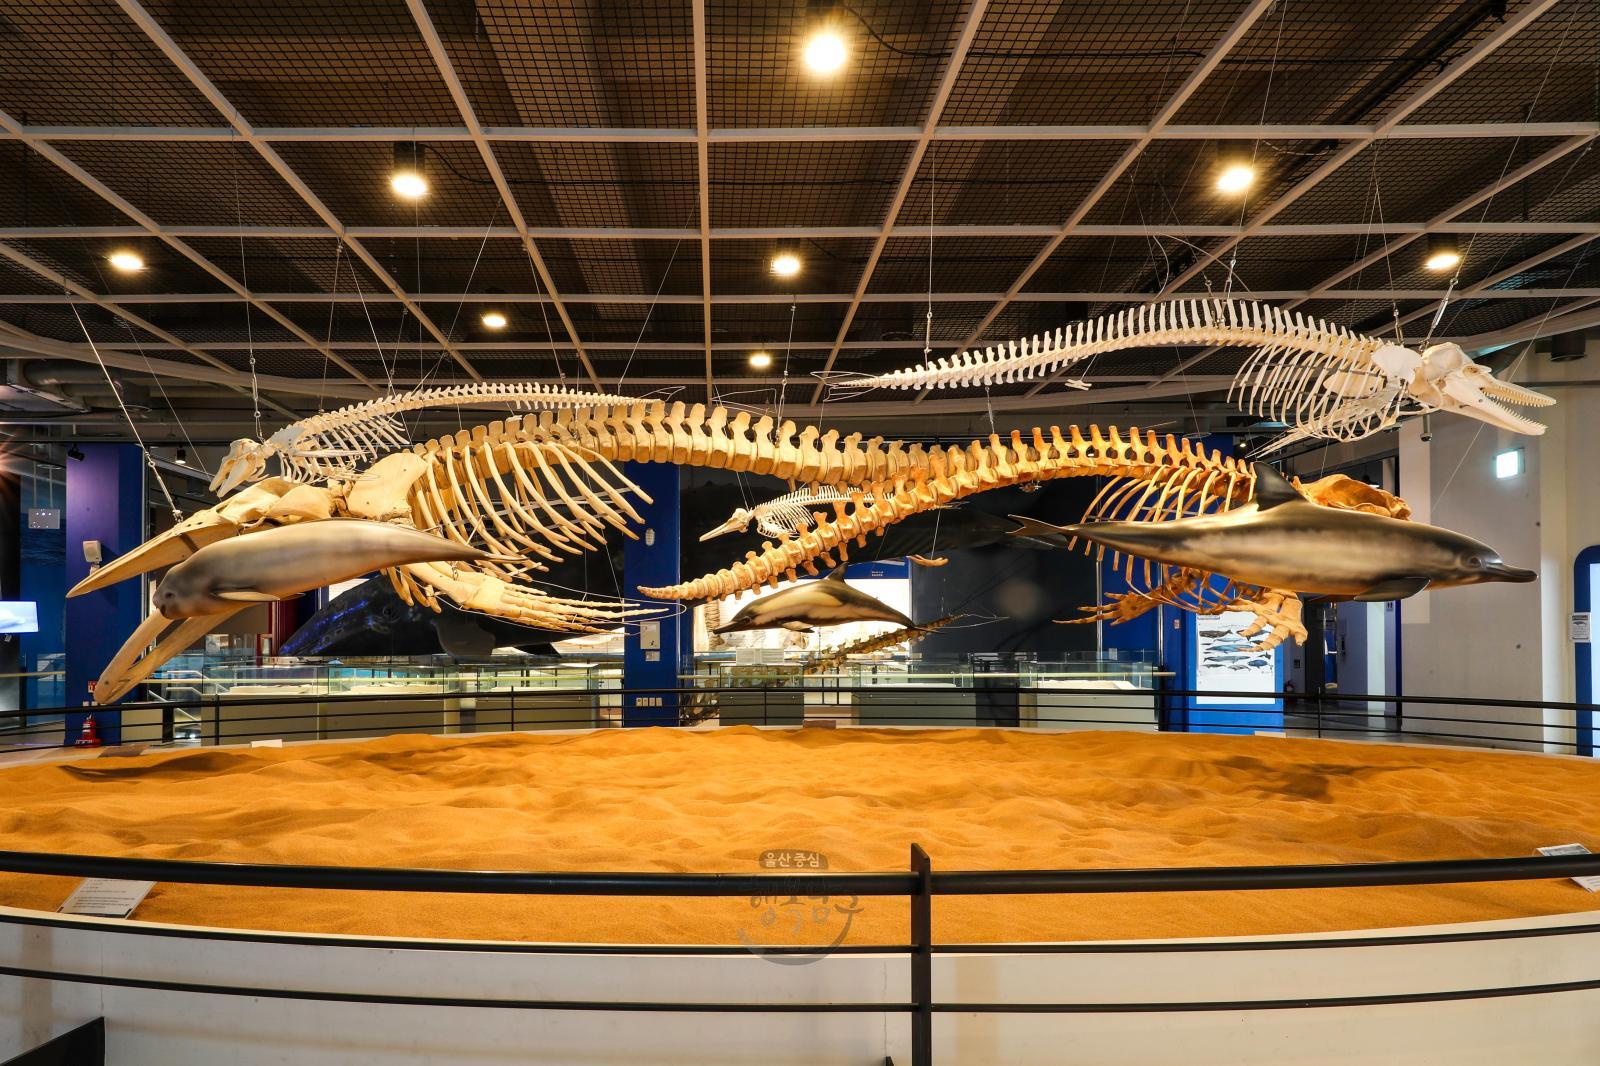 고래박물관 전시물(고래뼈) 의 사진